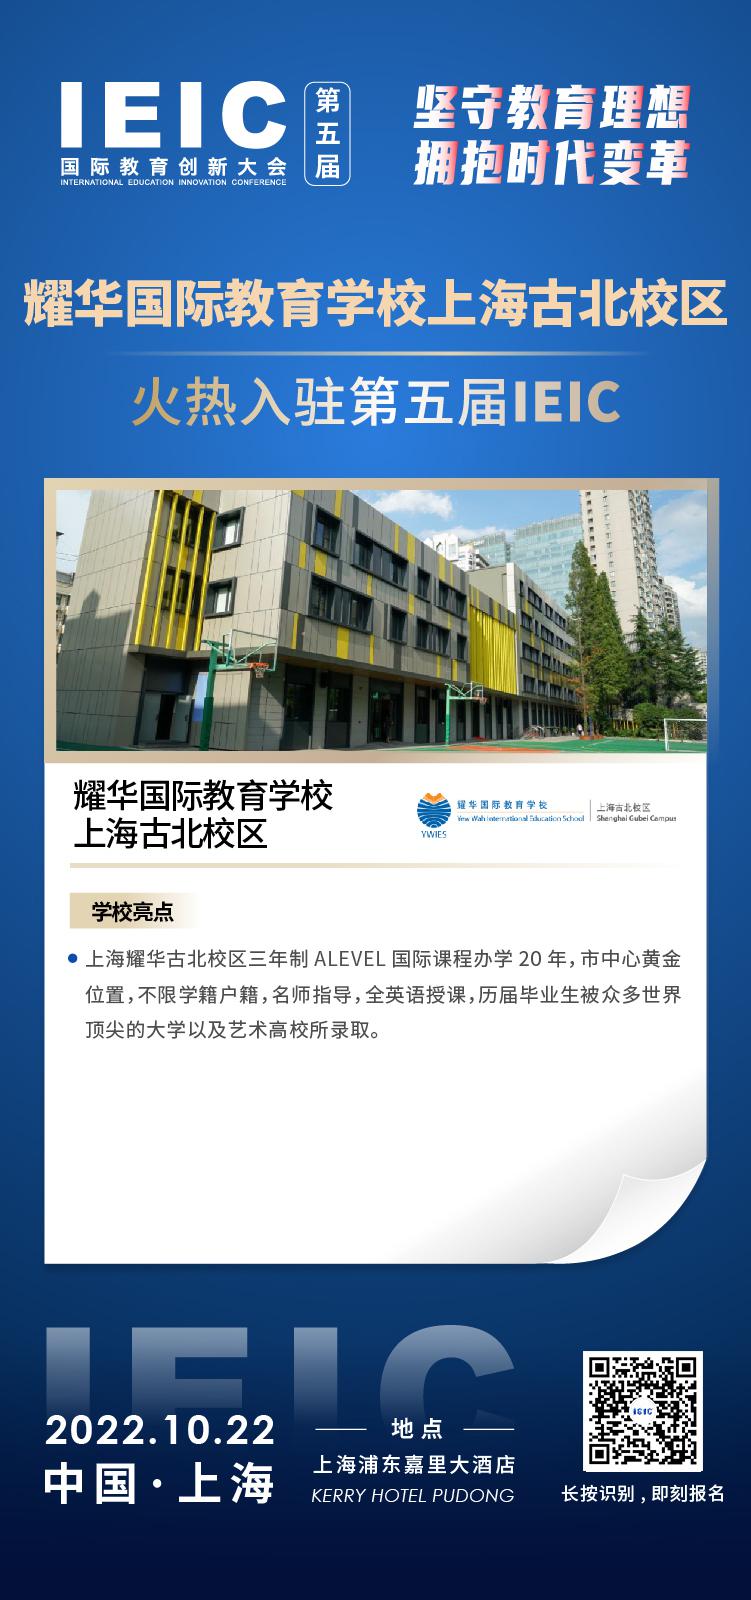 上海耀华国际教育古北校区成功入驻参加2022年远播第五届IEIC国际教育创新大会